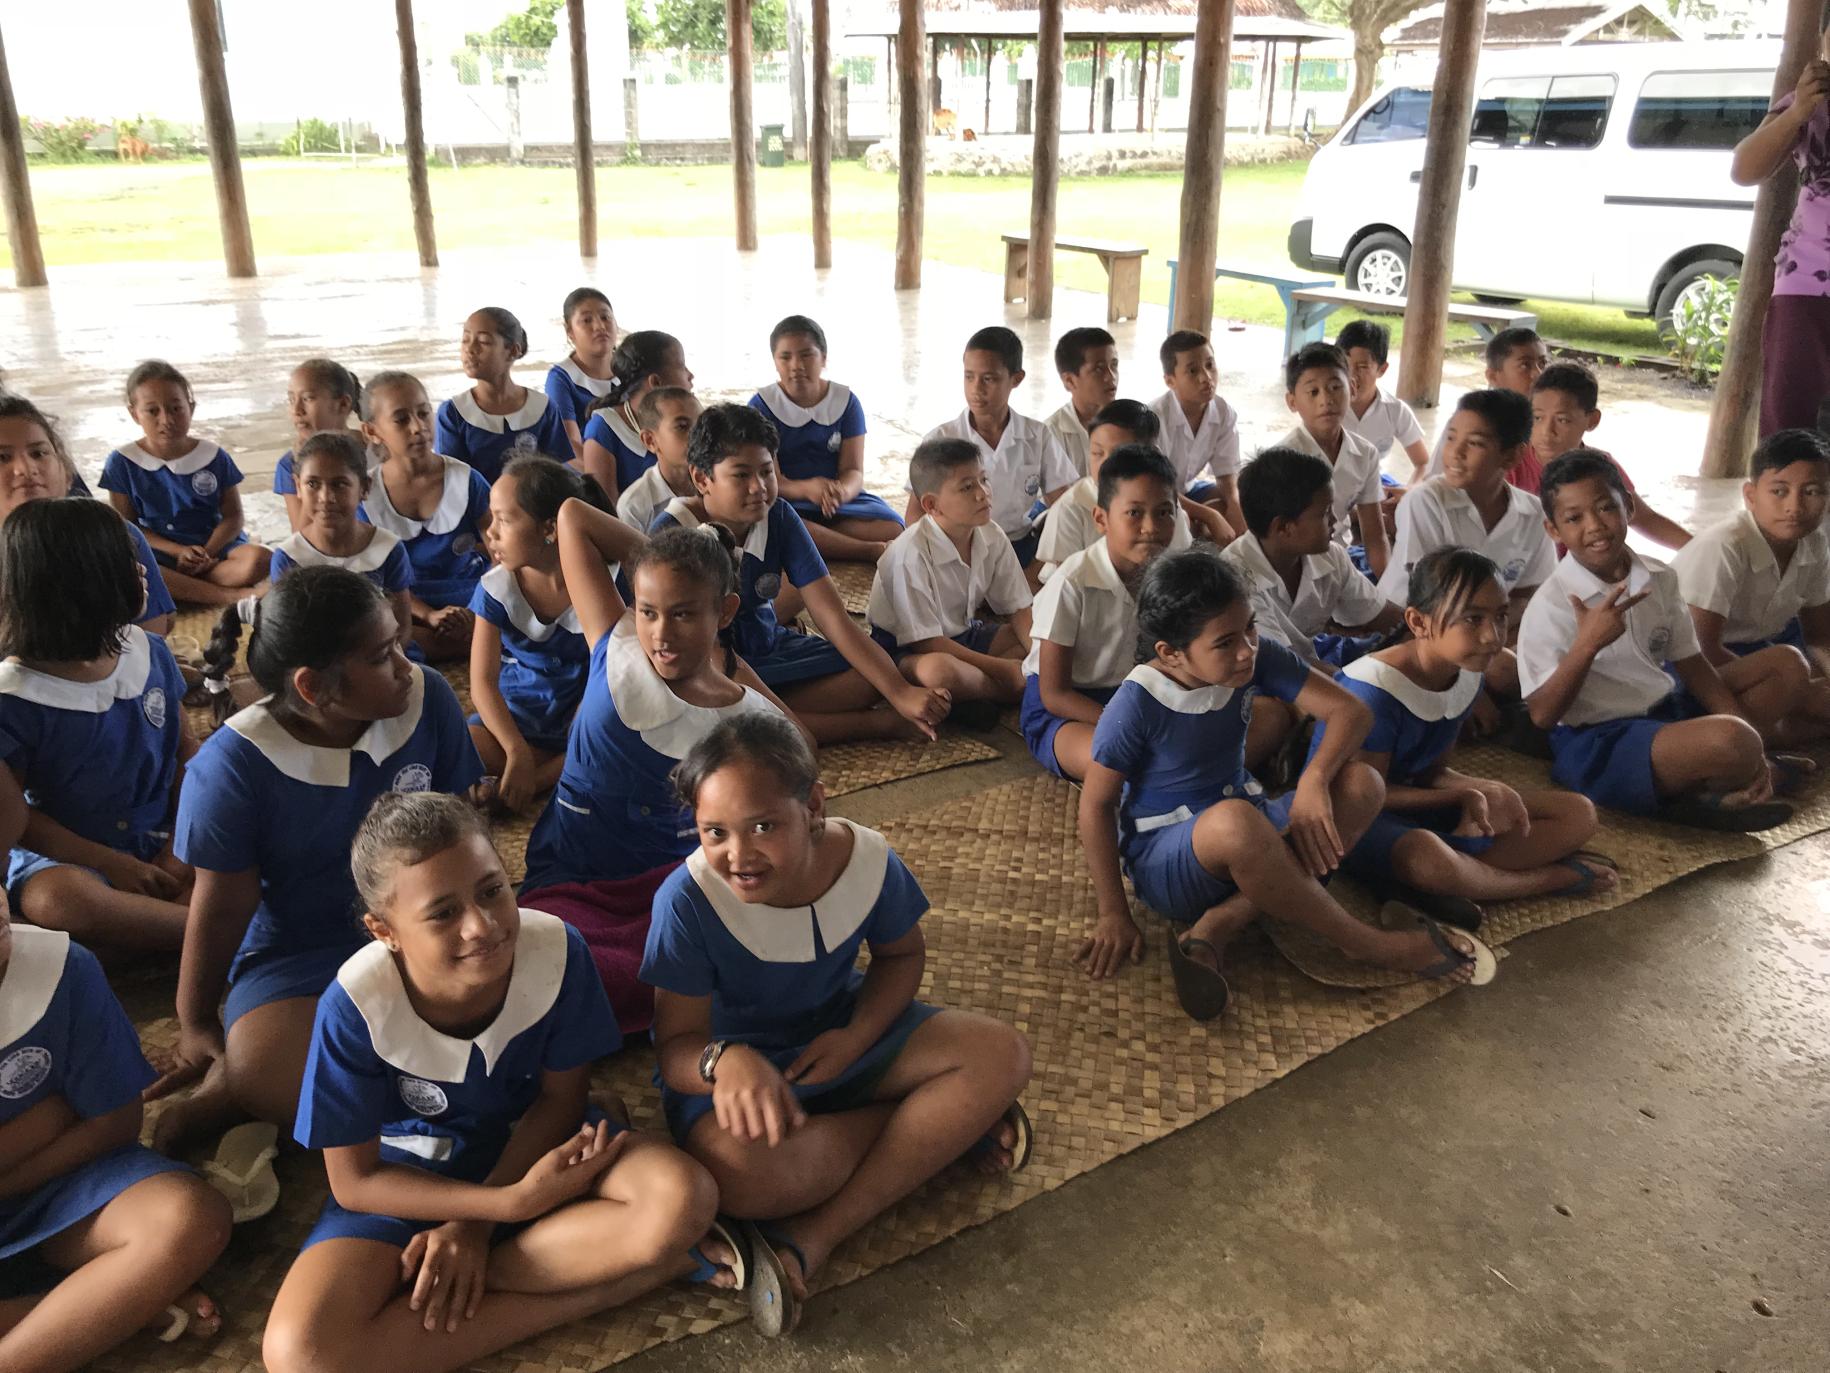 Aux Samos, de jeunes écoliers et écolières en uniforme scolaire sont assis en tailleur sur des nattes en bambou, à même le sol, dans un espace extérieur couvert.